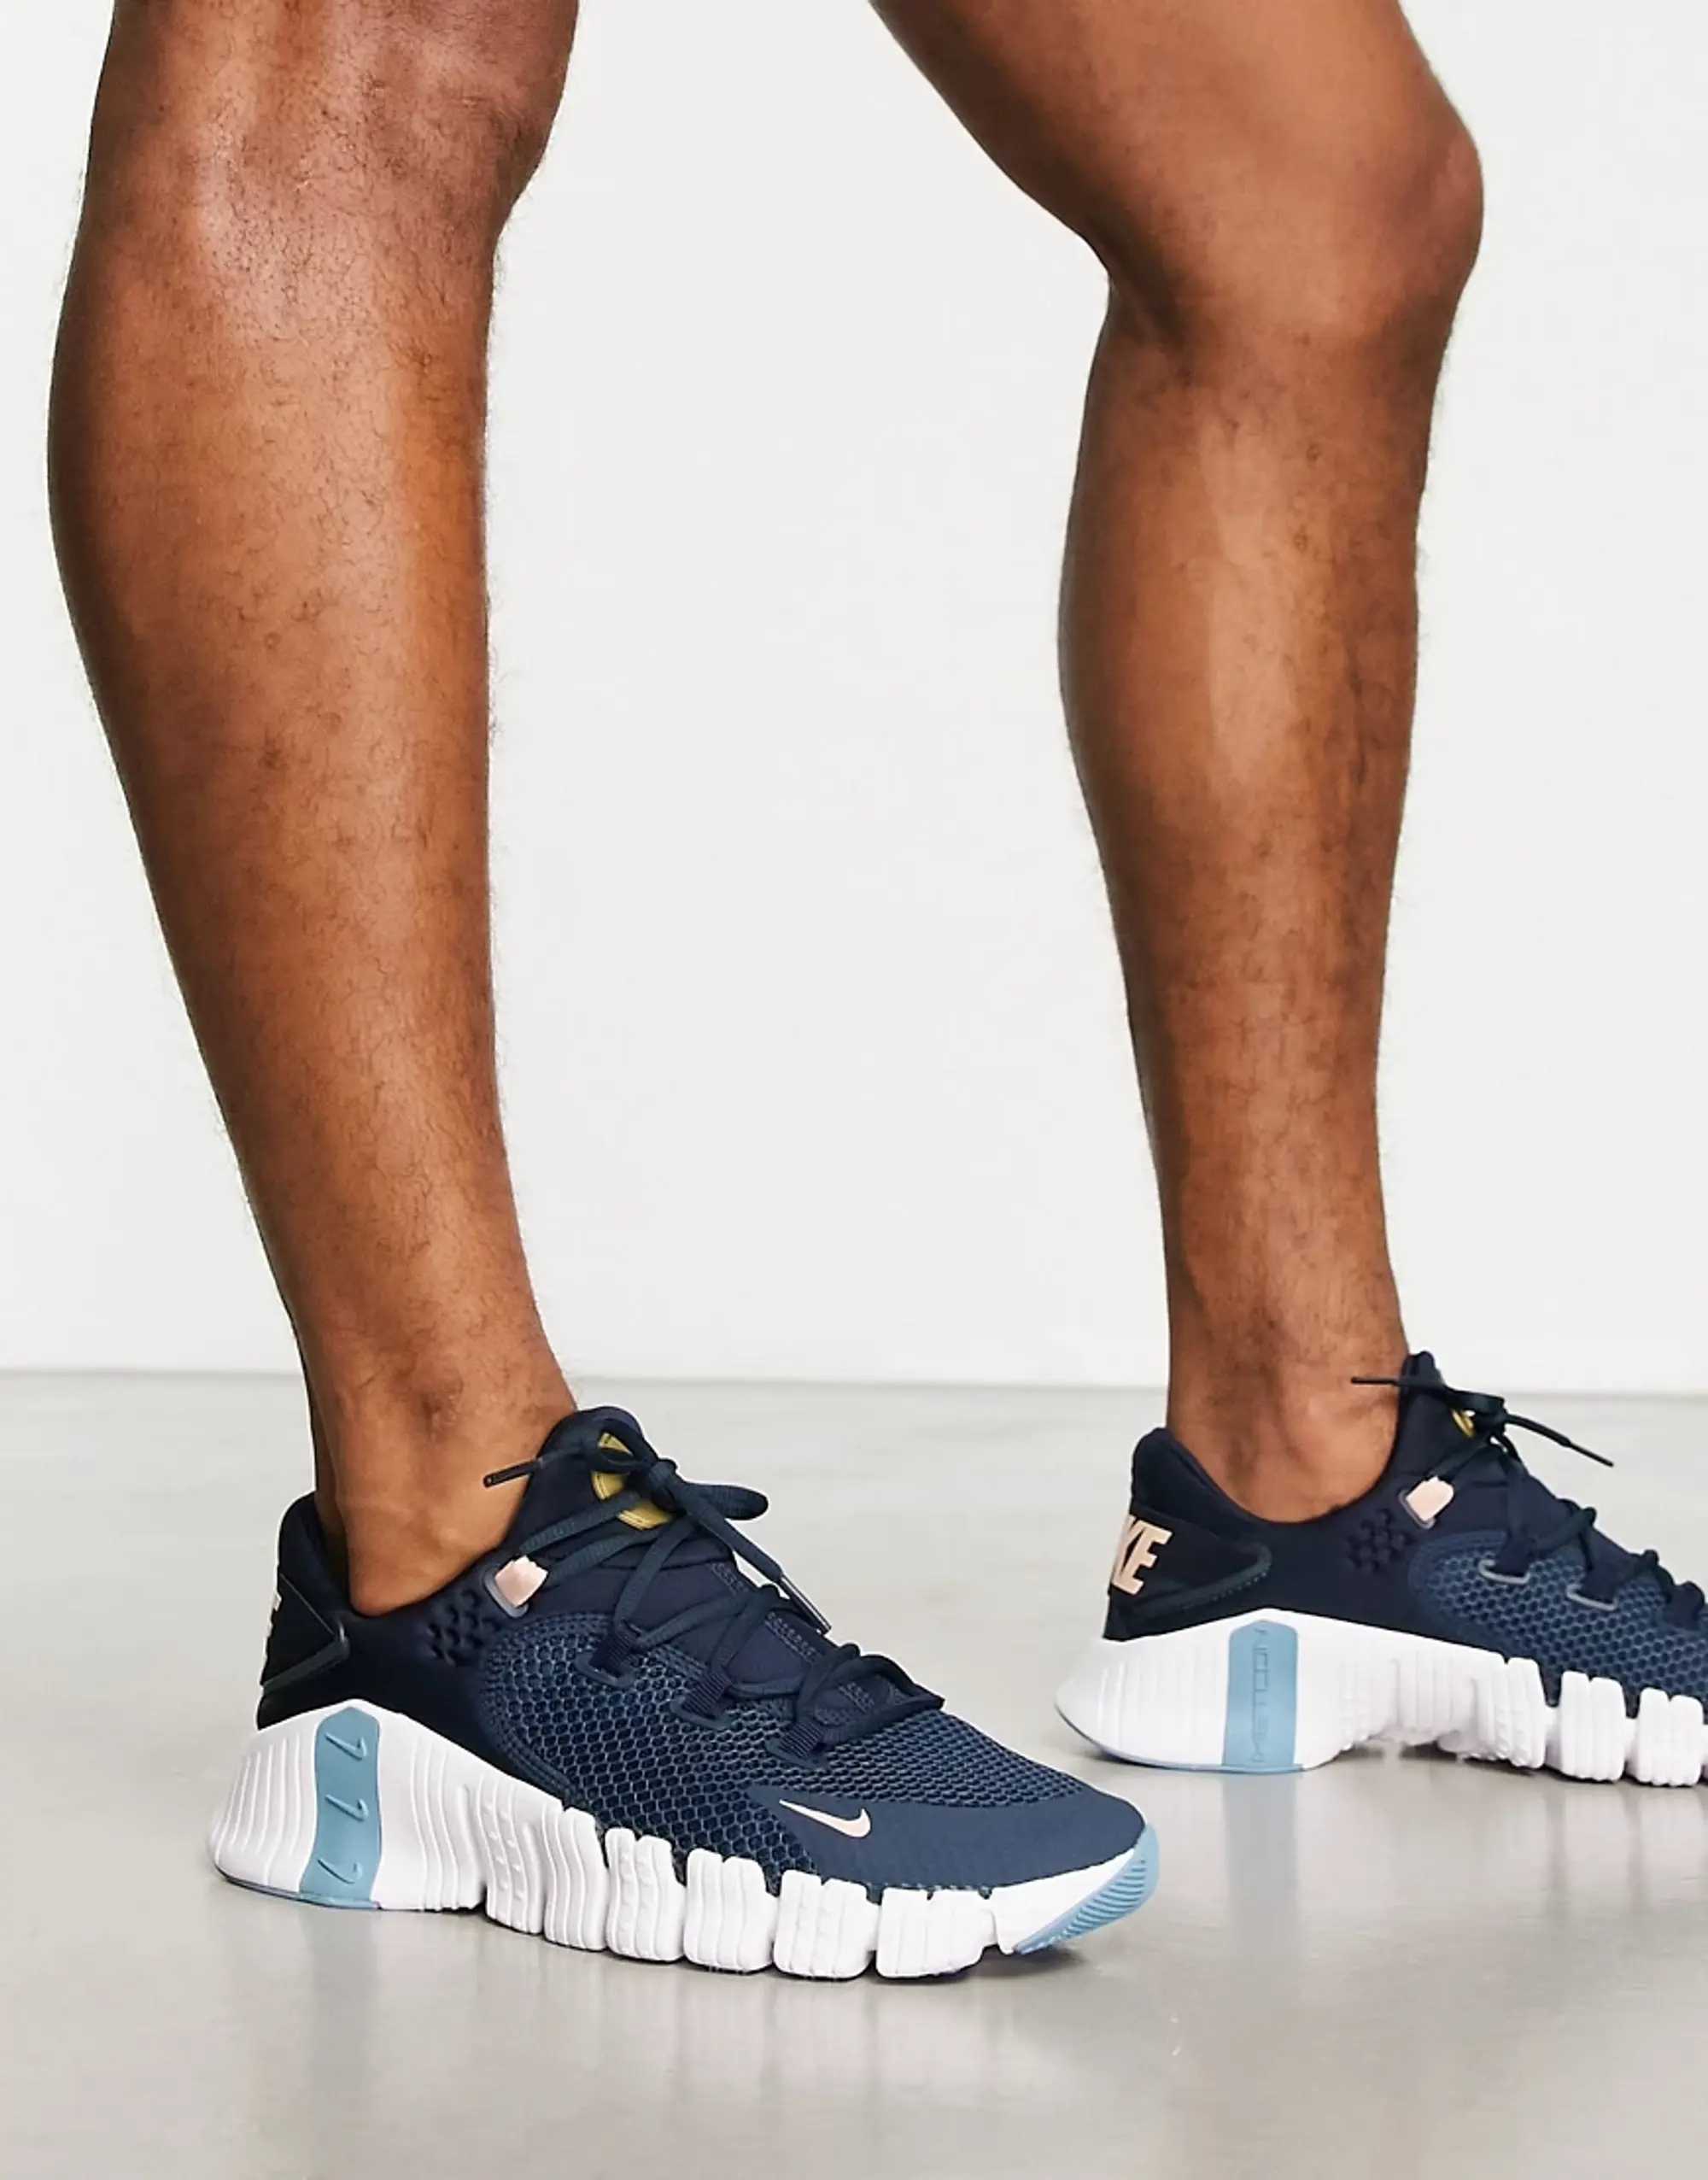 Nike Free Metcon 4 Mens Training Shoes - Blue